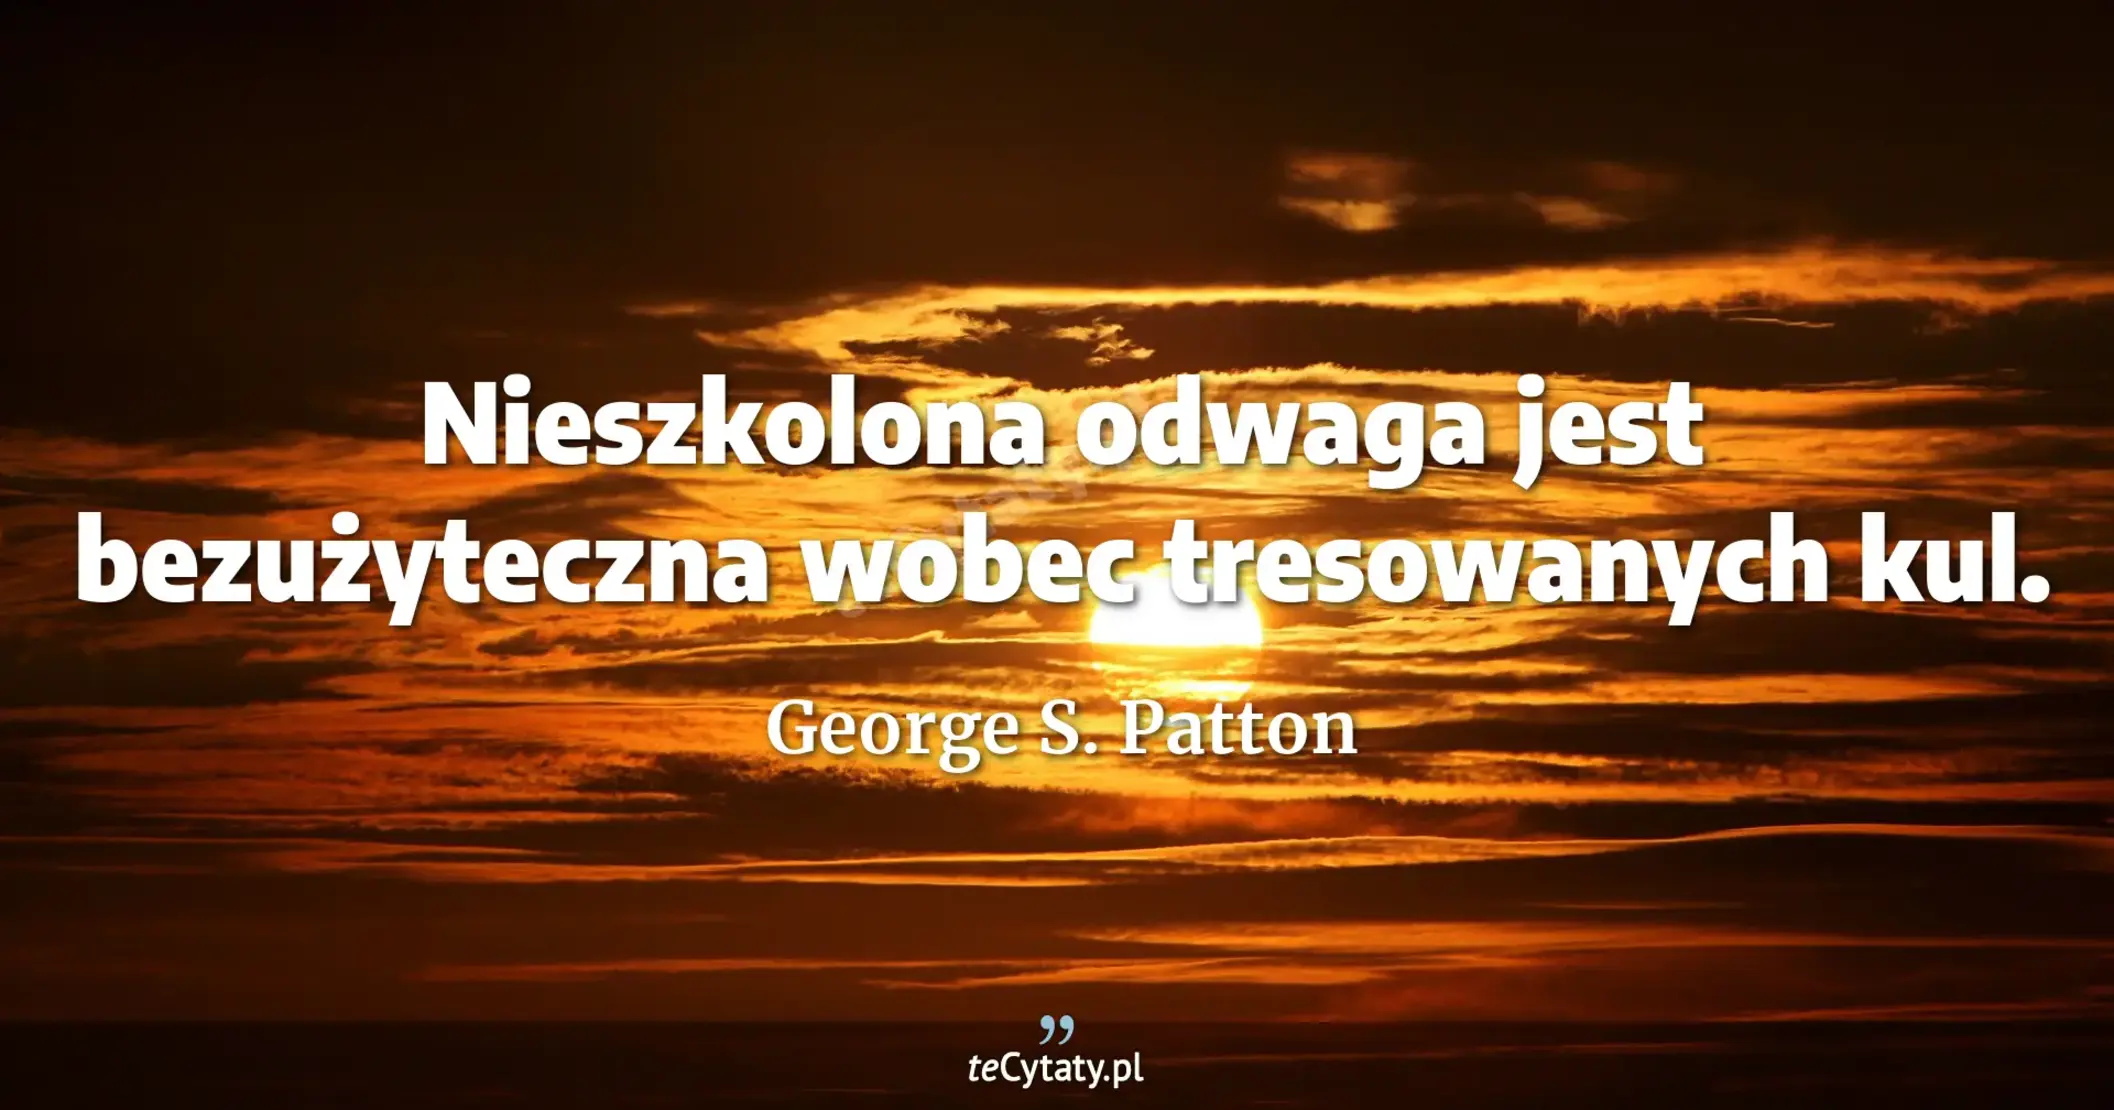 Nieszkolona odwaga jest bezużyteczna wobec tresowanych kul. - George S. Patton